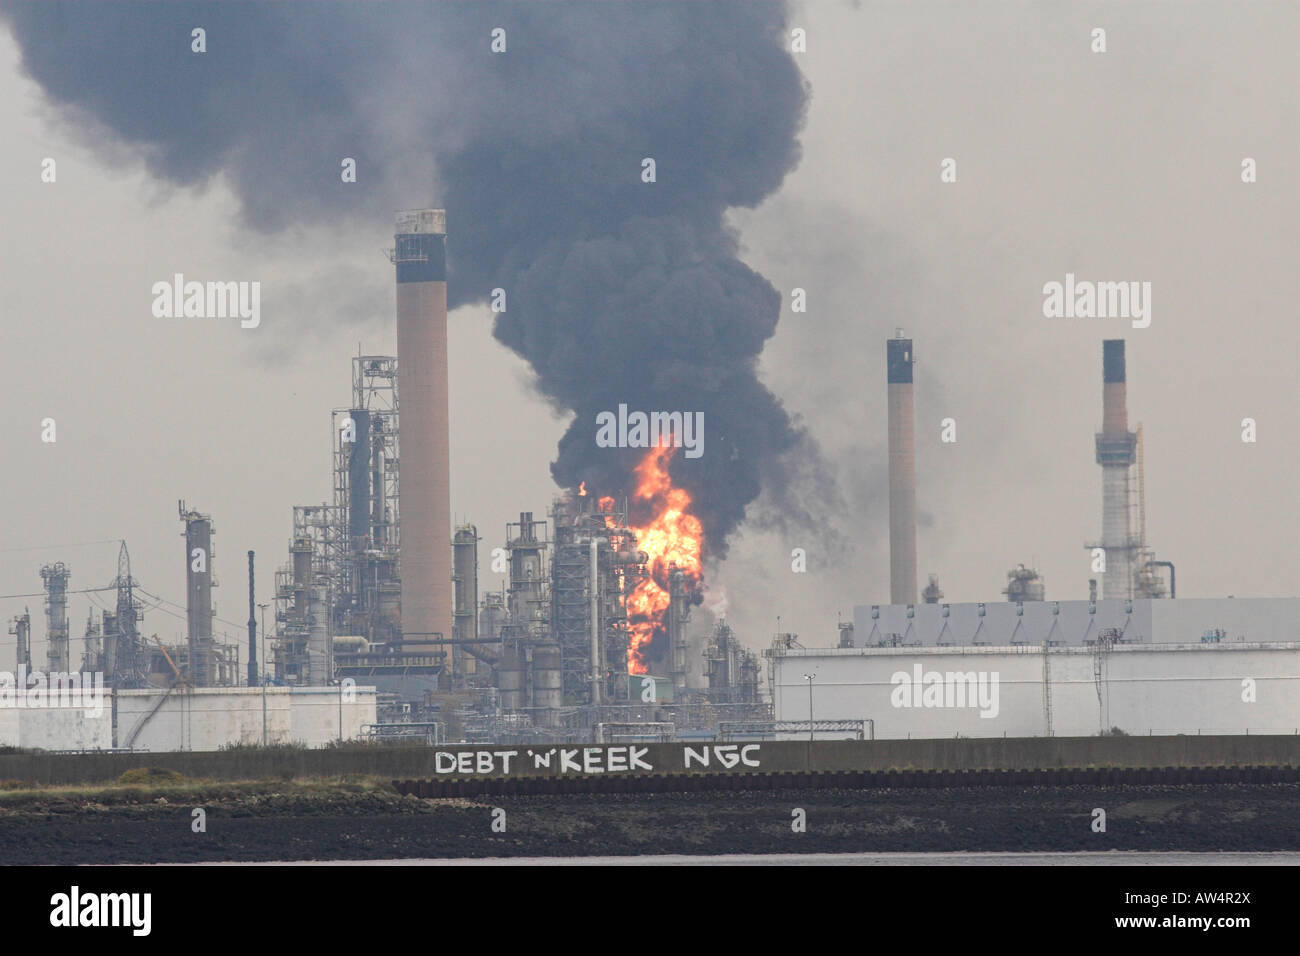 Coryton oil refinery on fire 2007 Stock Photo